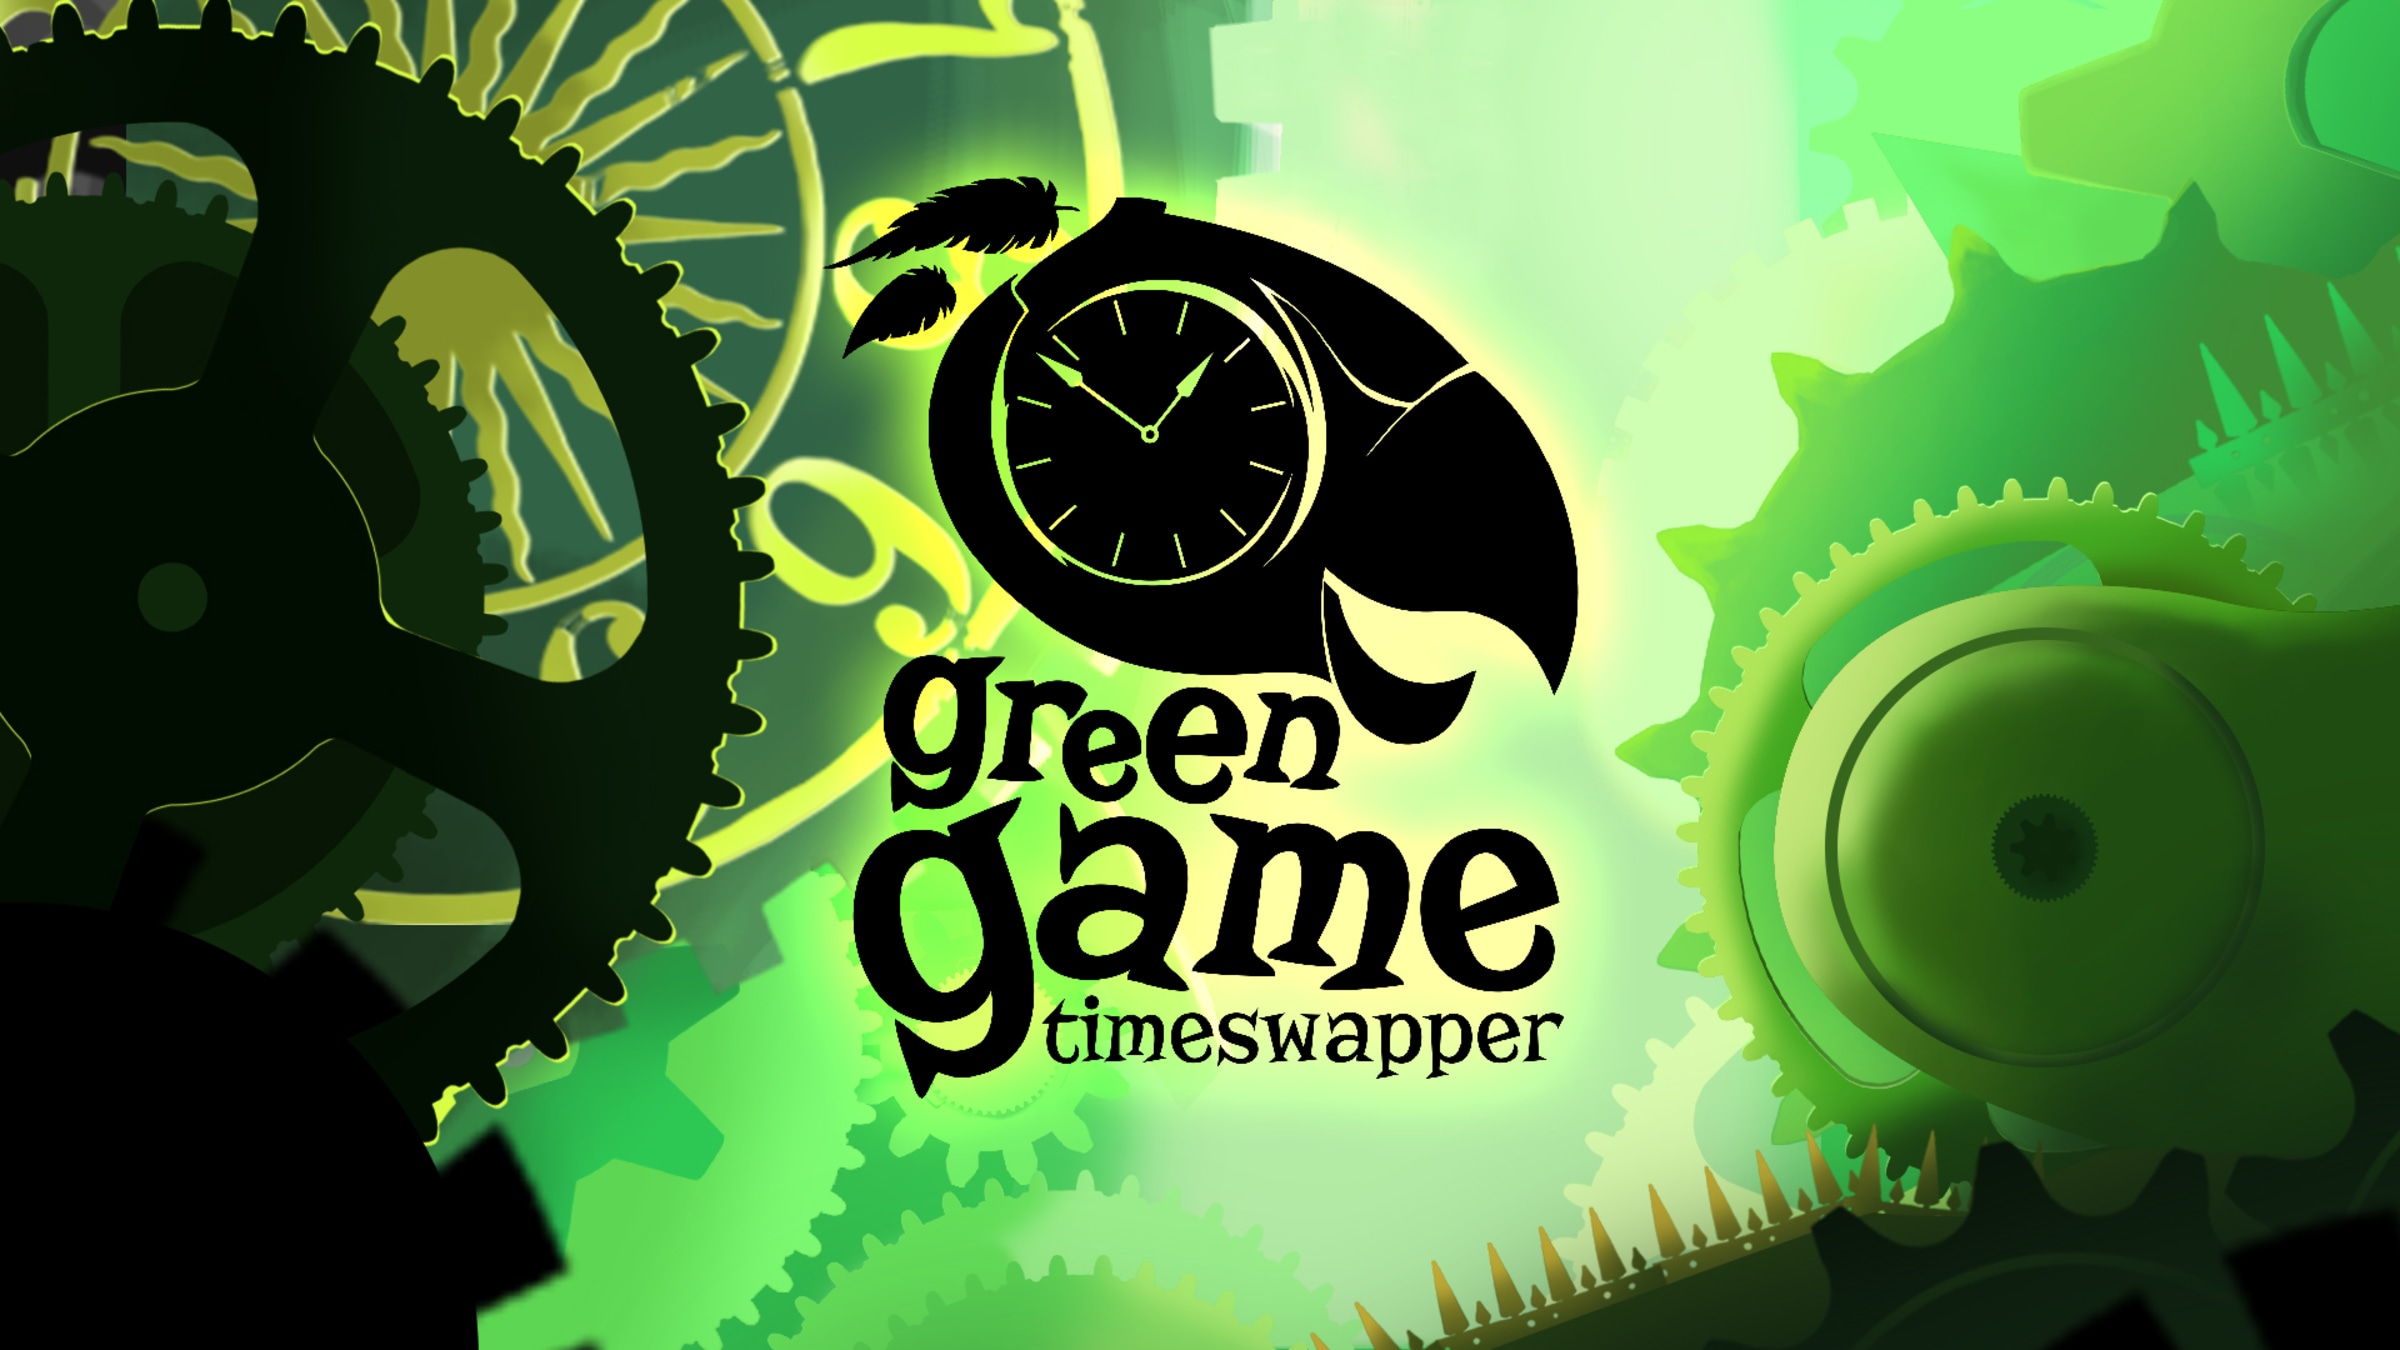 Игра зеленый фиолетово. Зеленая игра. Грин гейм. Green game TIMESWAPPER PS Vita. Greening игра.